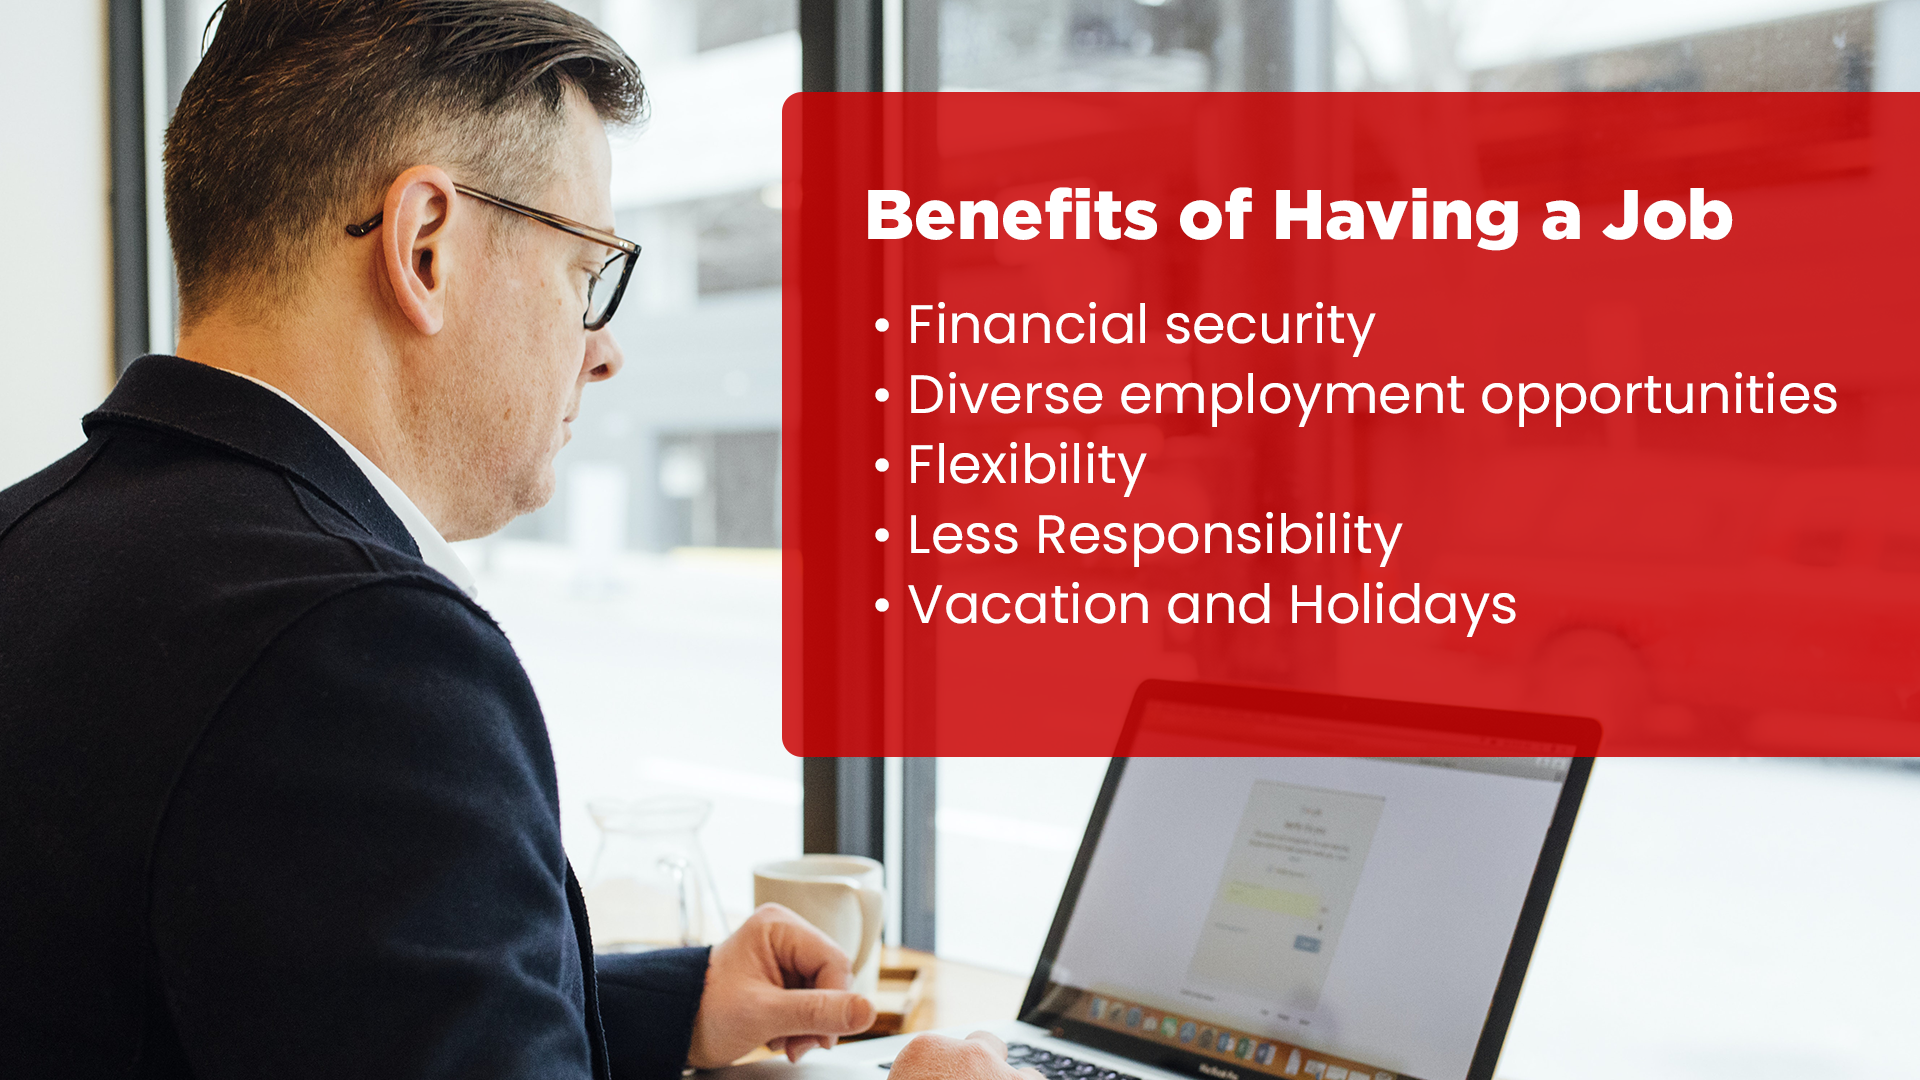 Benefits of a Job